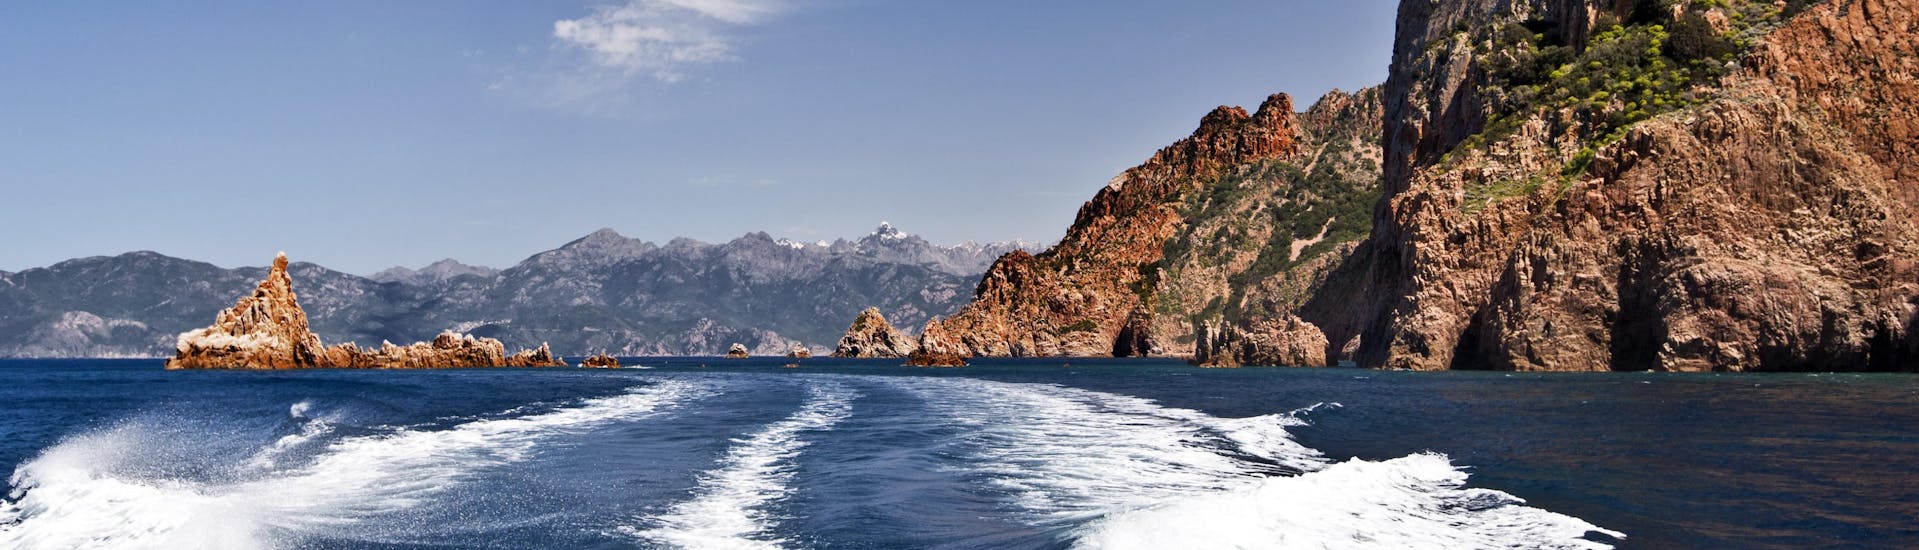 Blick vom Heck eines Bootes während einer Bootstour von Cargèse zu den beeindruckenden Calanques de Piana an der Westküste Korsikas.